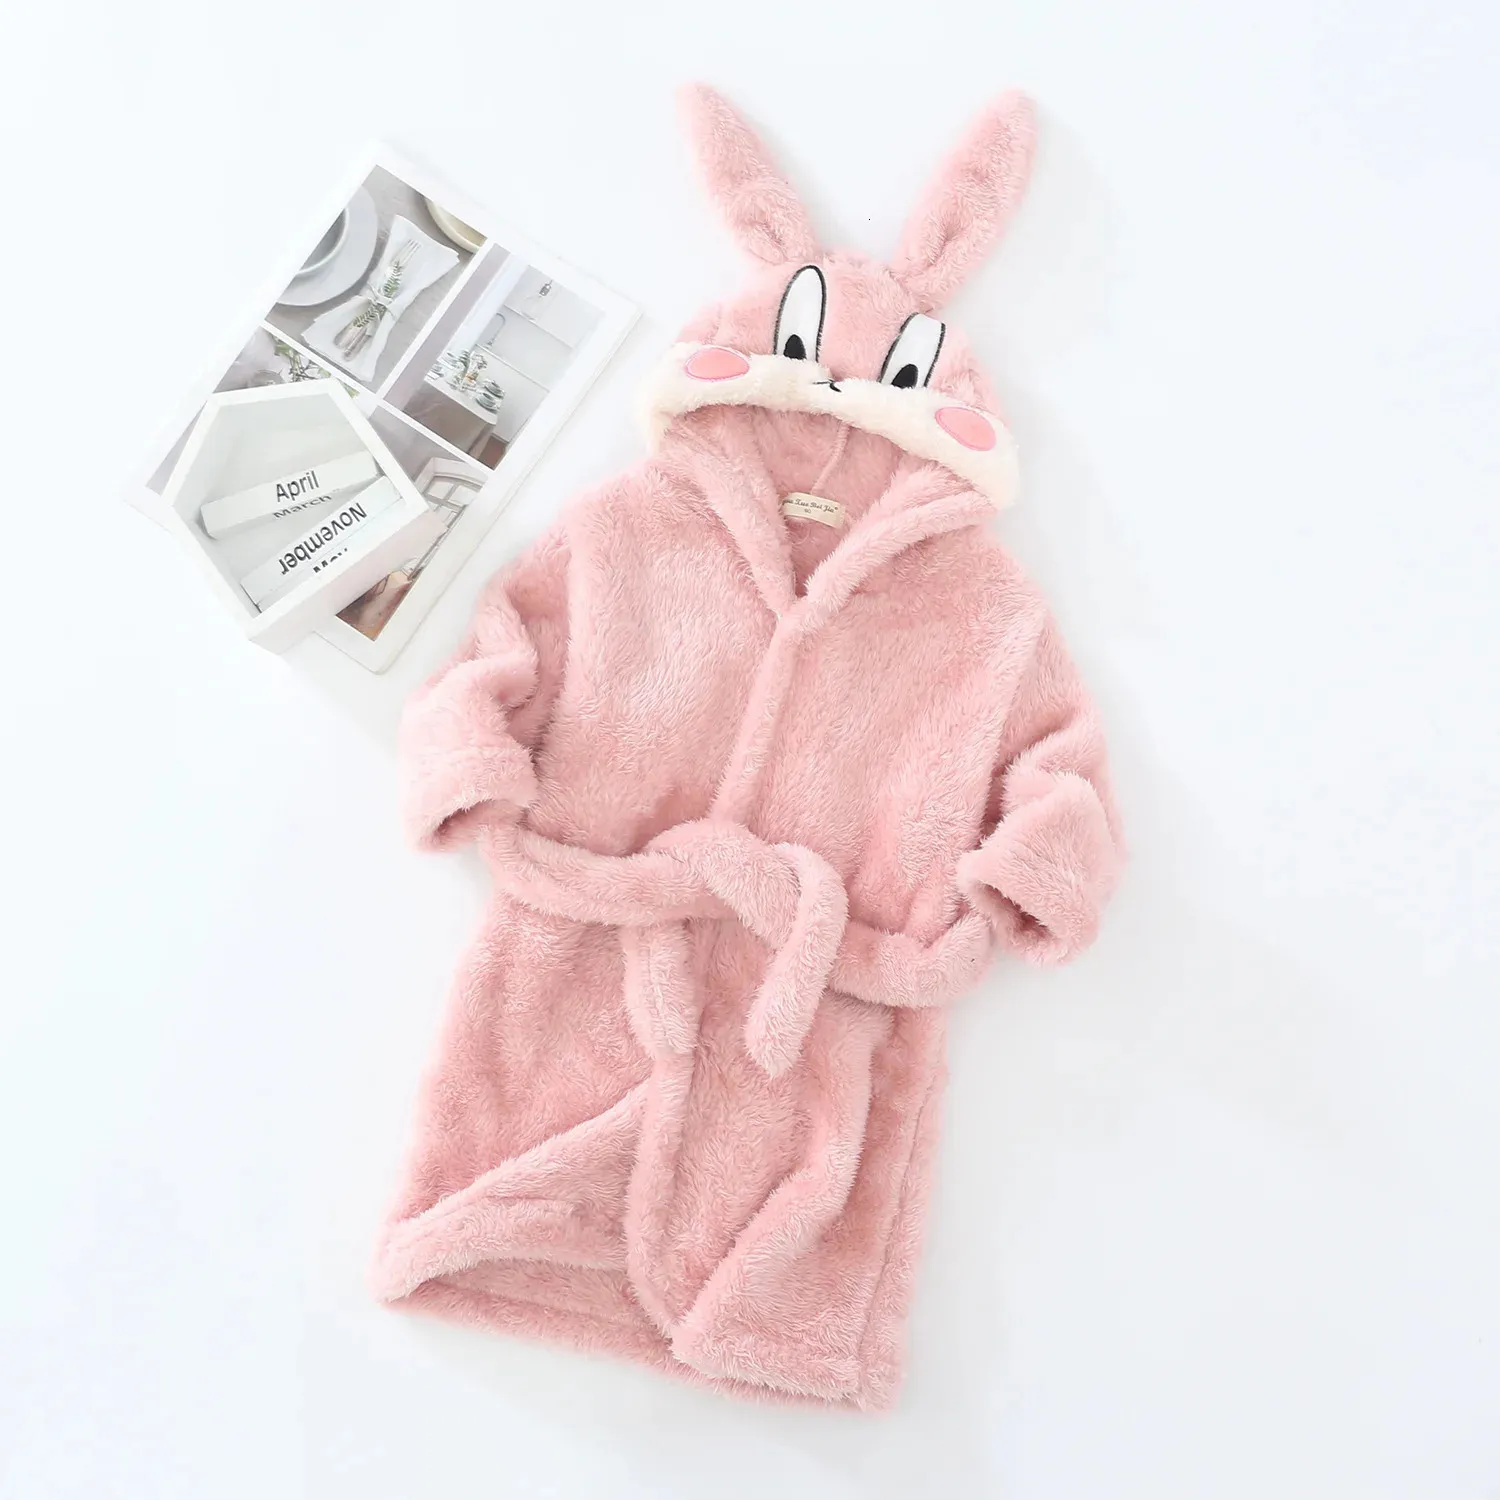 Handelsrockar Vinter Kid Girl Bathrobe Clothes Cartoon Rabbit Ear Hooded Barn pojke Flanell Varm sömnkläder Spädbarn Pyjamas Toddler Handduk A734 231208